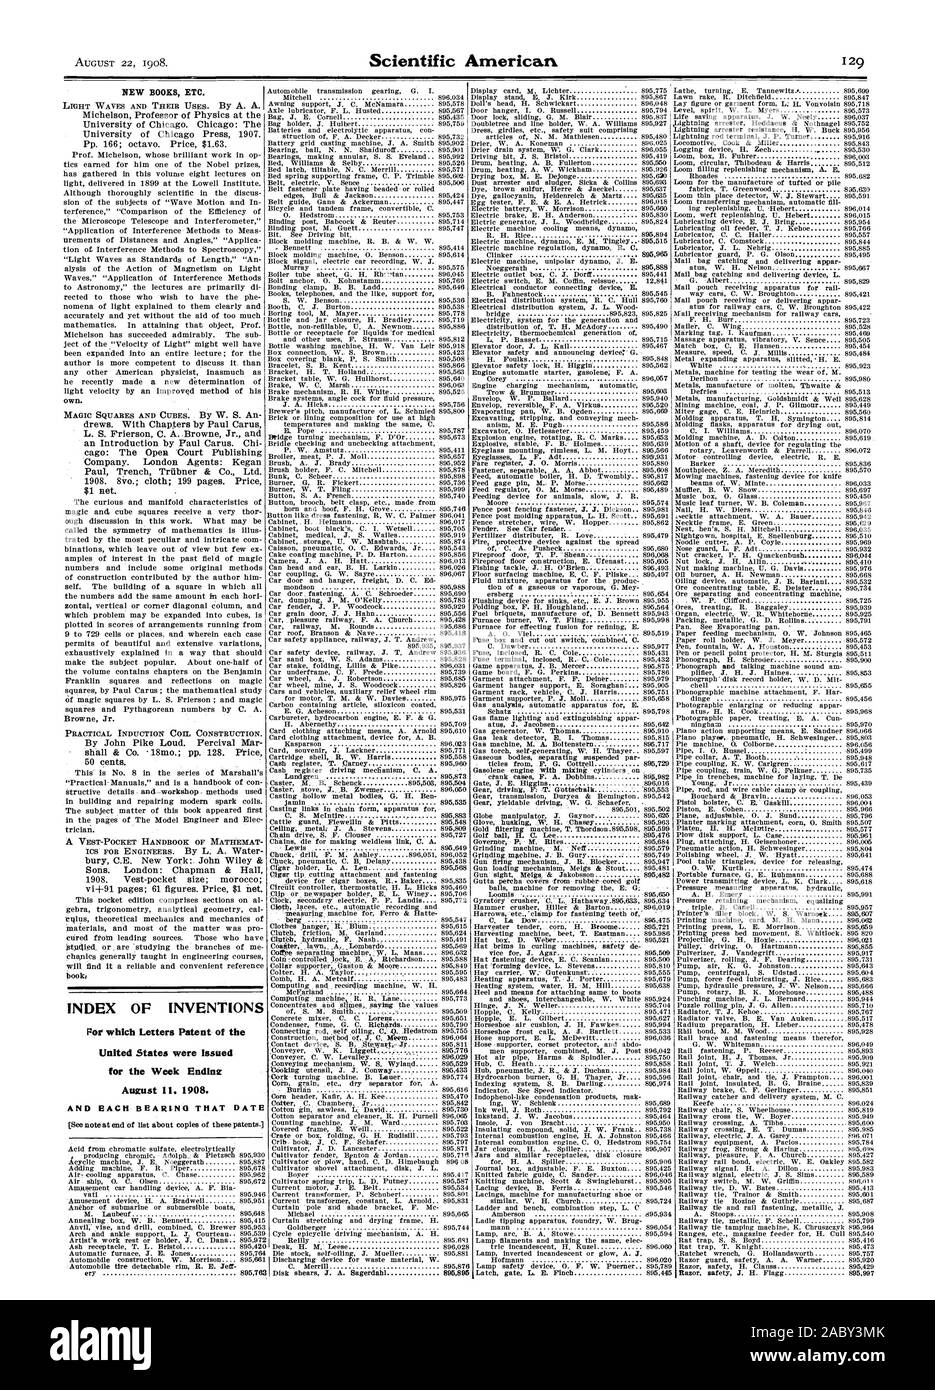 Índice de inventos por qué cartas patentes de los Estados Unidos fueron emitidos durante la semana Endinz Auzust . 1908., Scientific American, 1908-08-22 Foto de stock